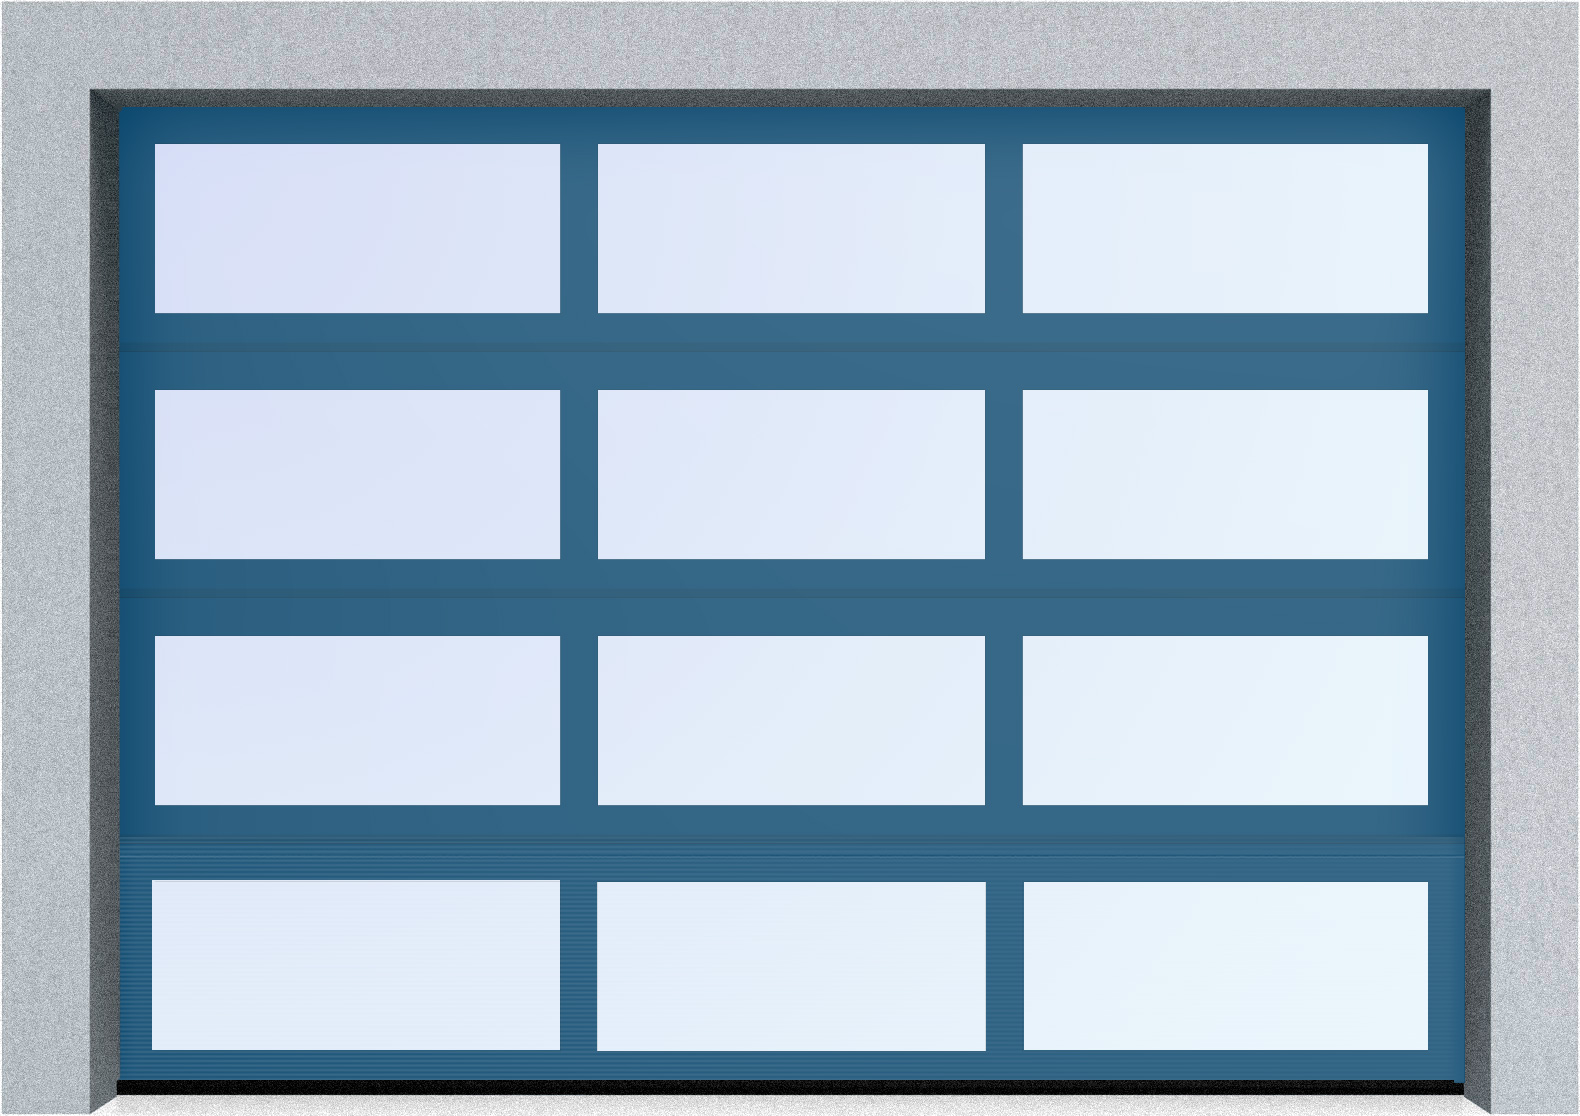  Автоматические секционные панорамные ворота серии AluTrend (АЛП) 3875х4500 стандартные цвета, фото 3 